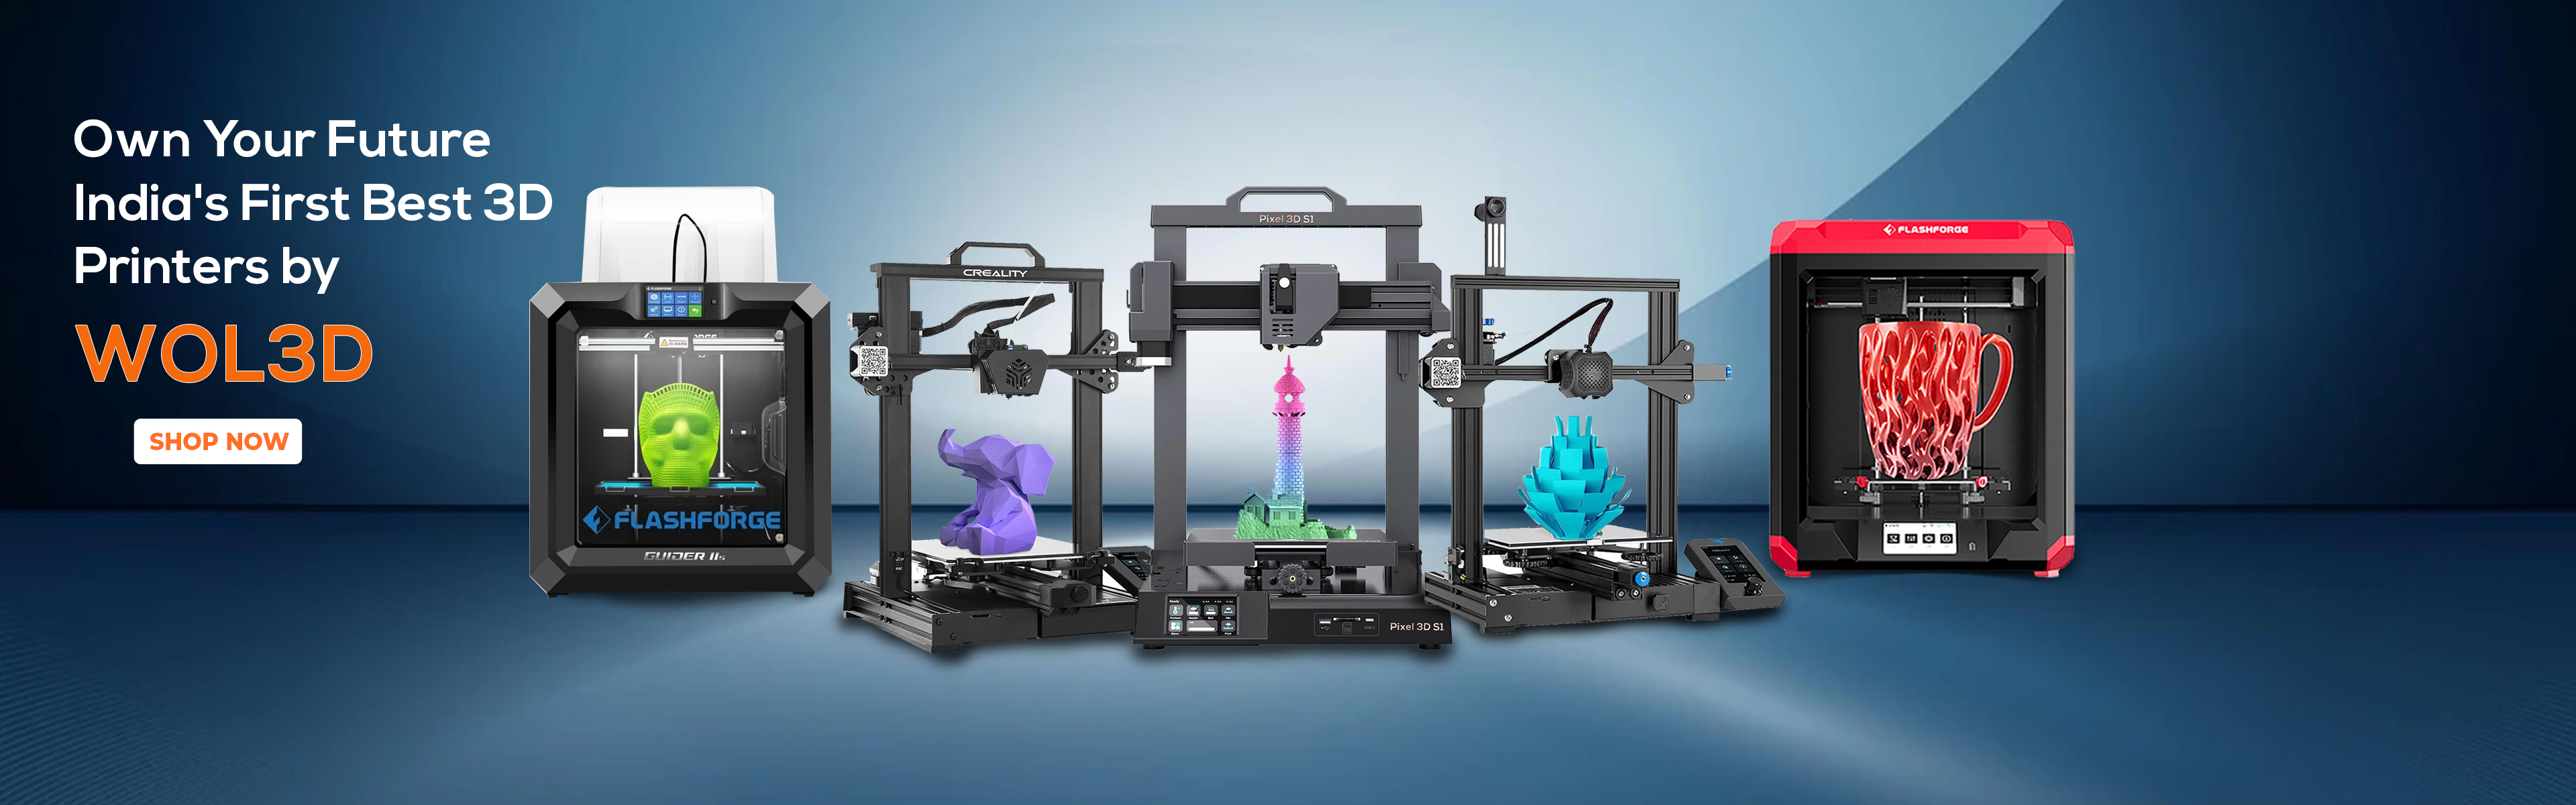 af på en ferie angst Buy 3D printers instantly and at affordable prices